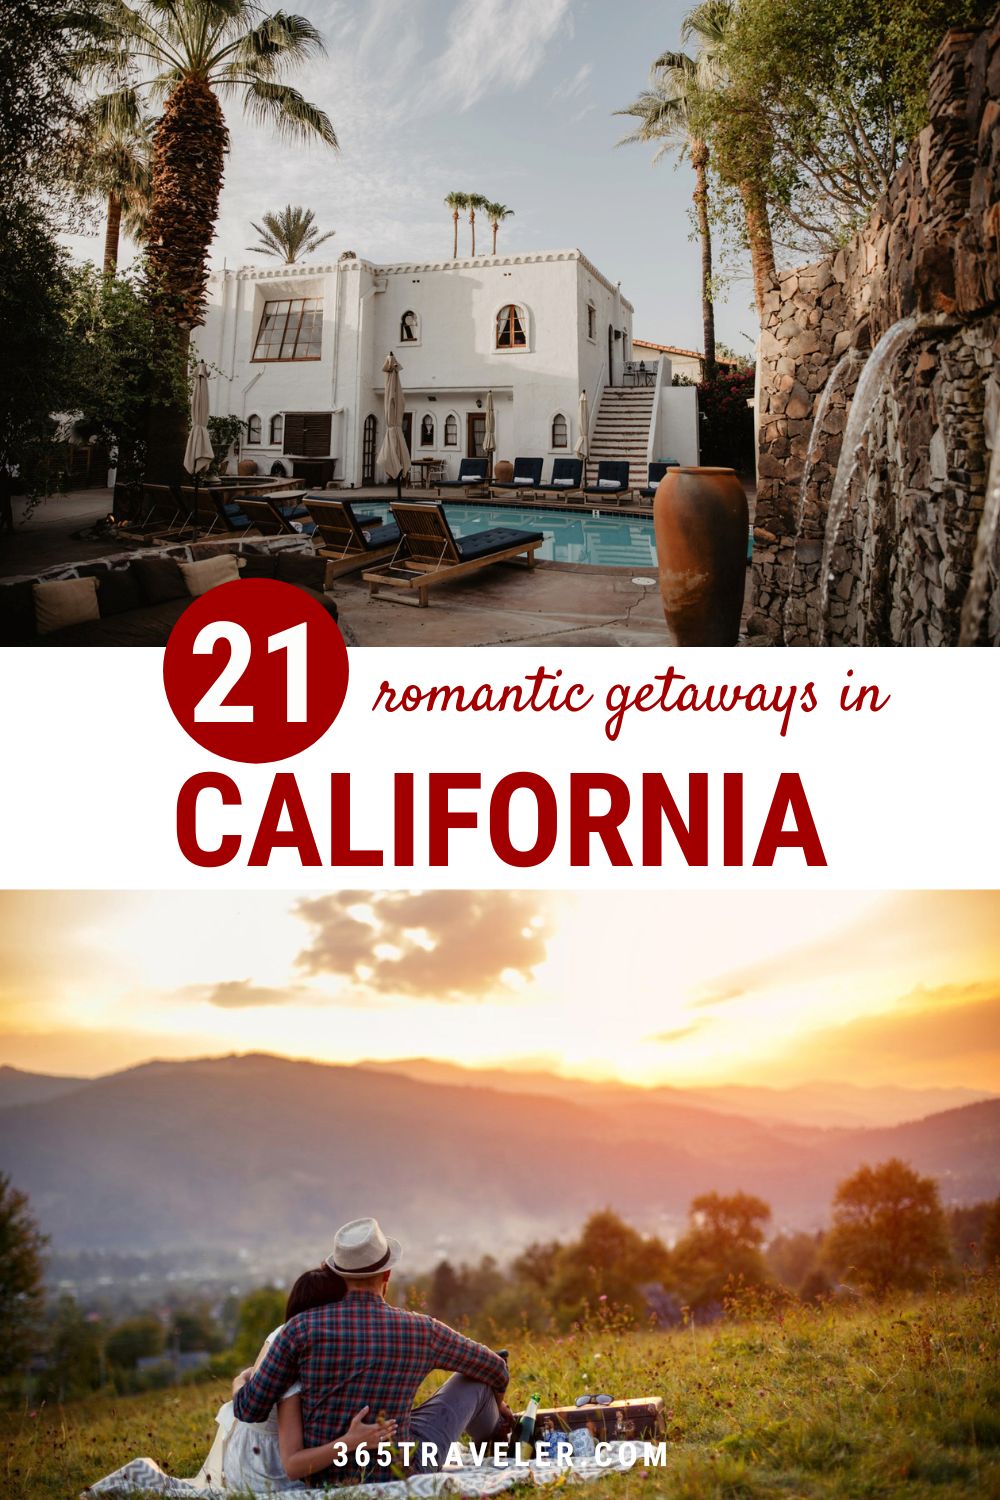 21 Romantic Getaways in California You’ll Love